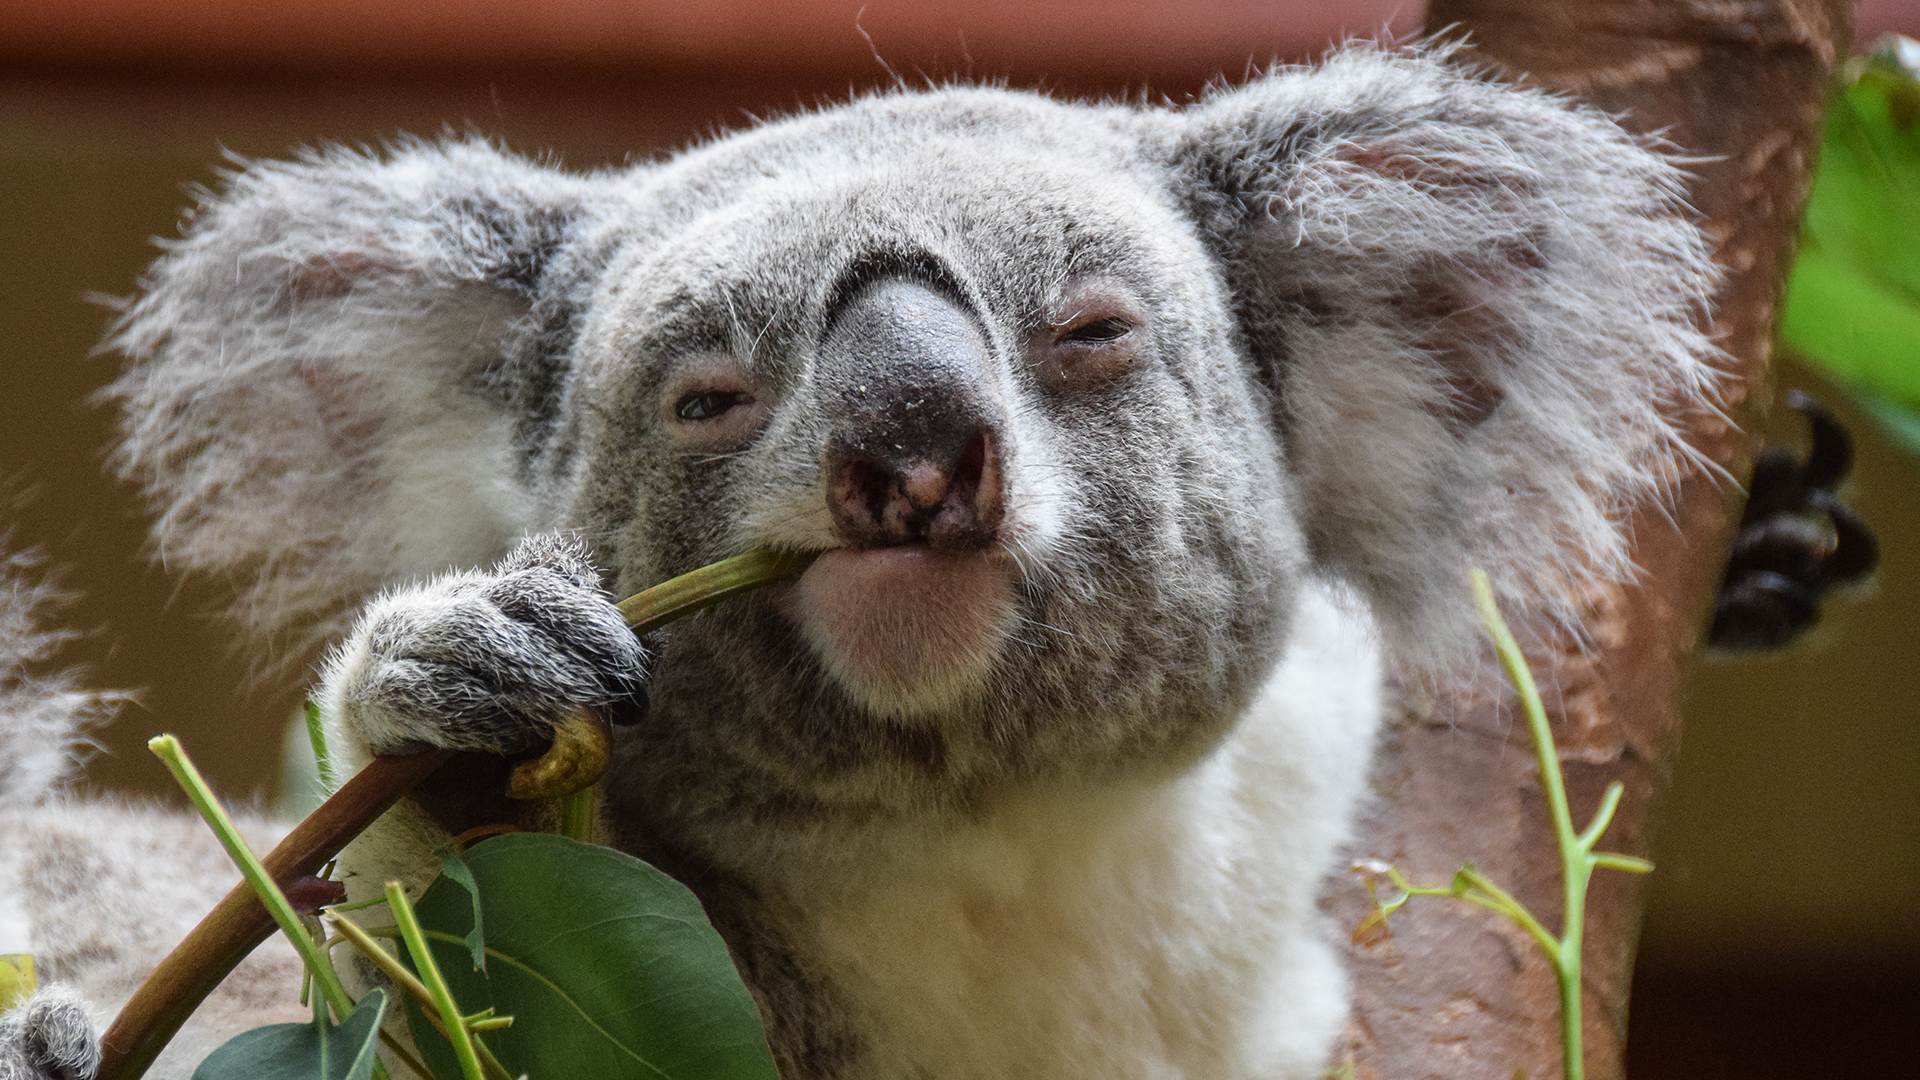 L'Australie vaccine des koalas sauvages en voie de disparition contre ...